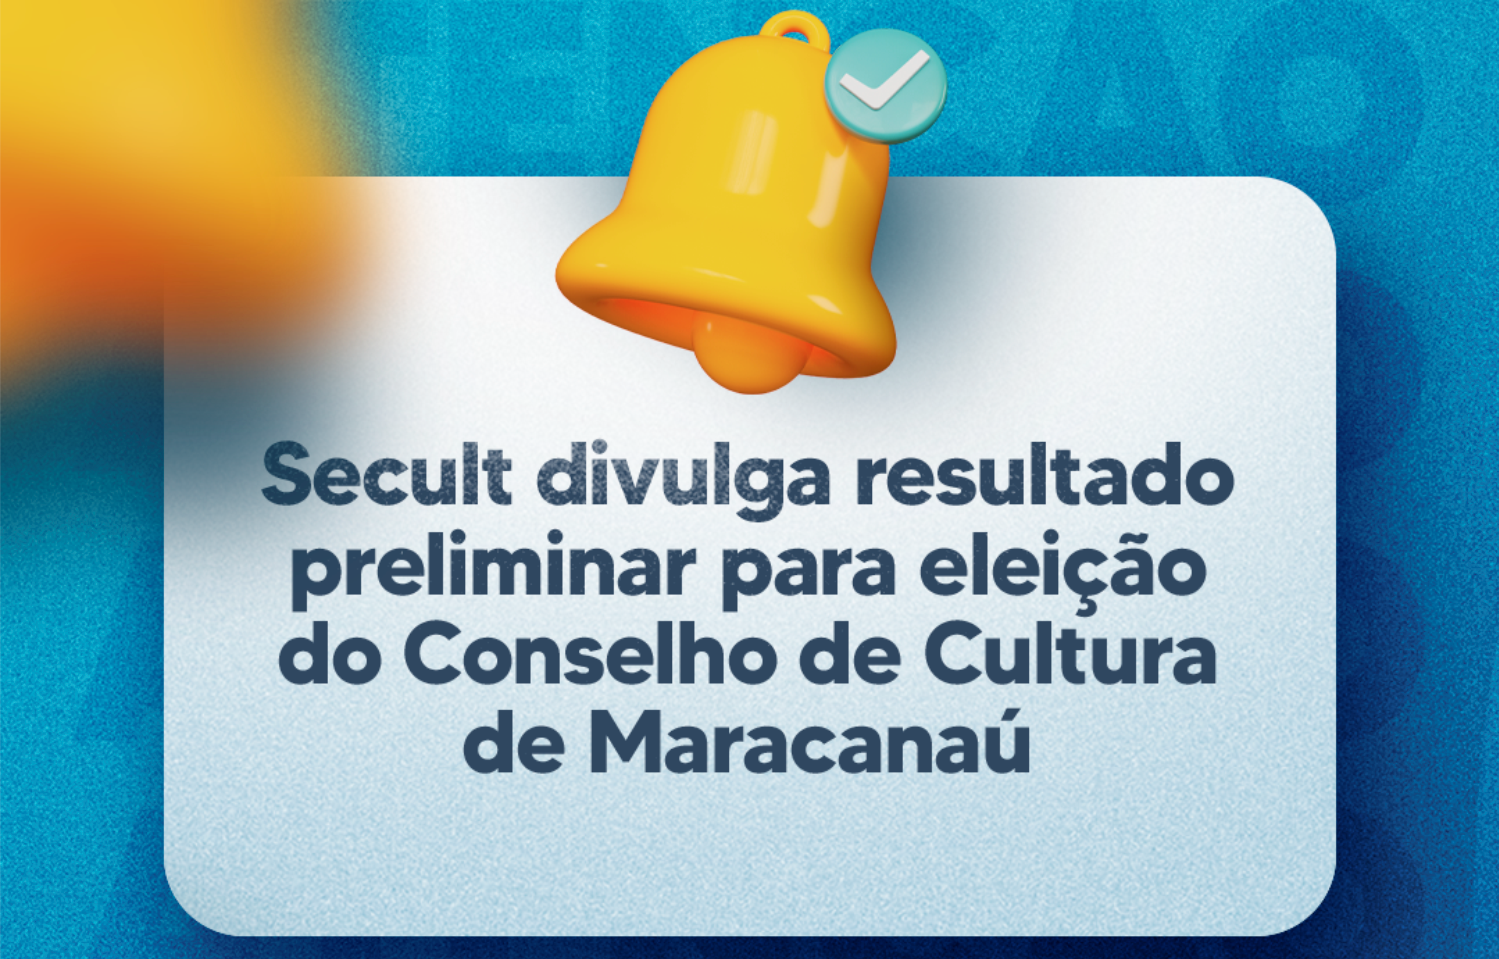 Você está visualizando atualmente Secult divulga resultado preliminar para eleição do Conselho de Cultura de Maracanaú